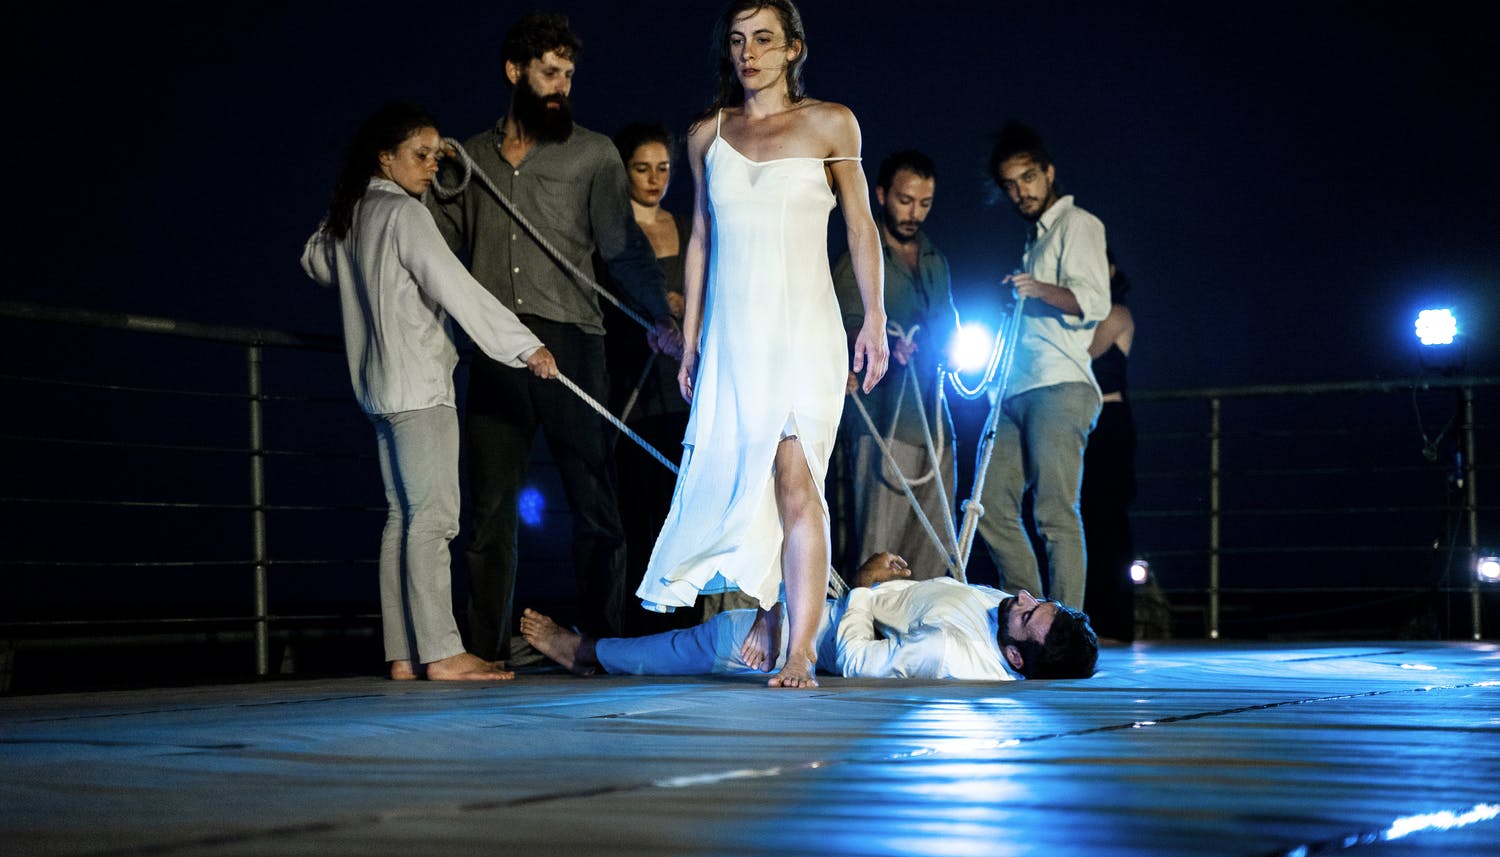 Una danzatrice da le spalle a un gruppo di danzatori che tengono legato a terra un uomo steso.